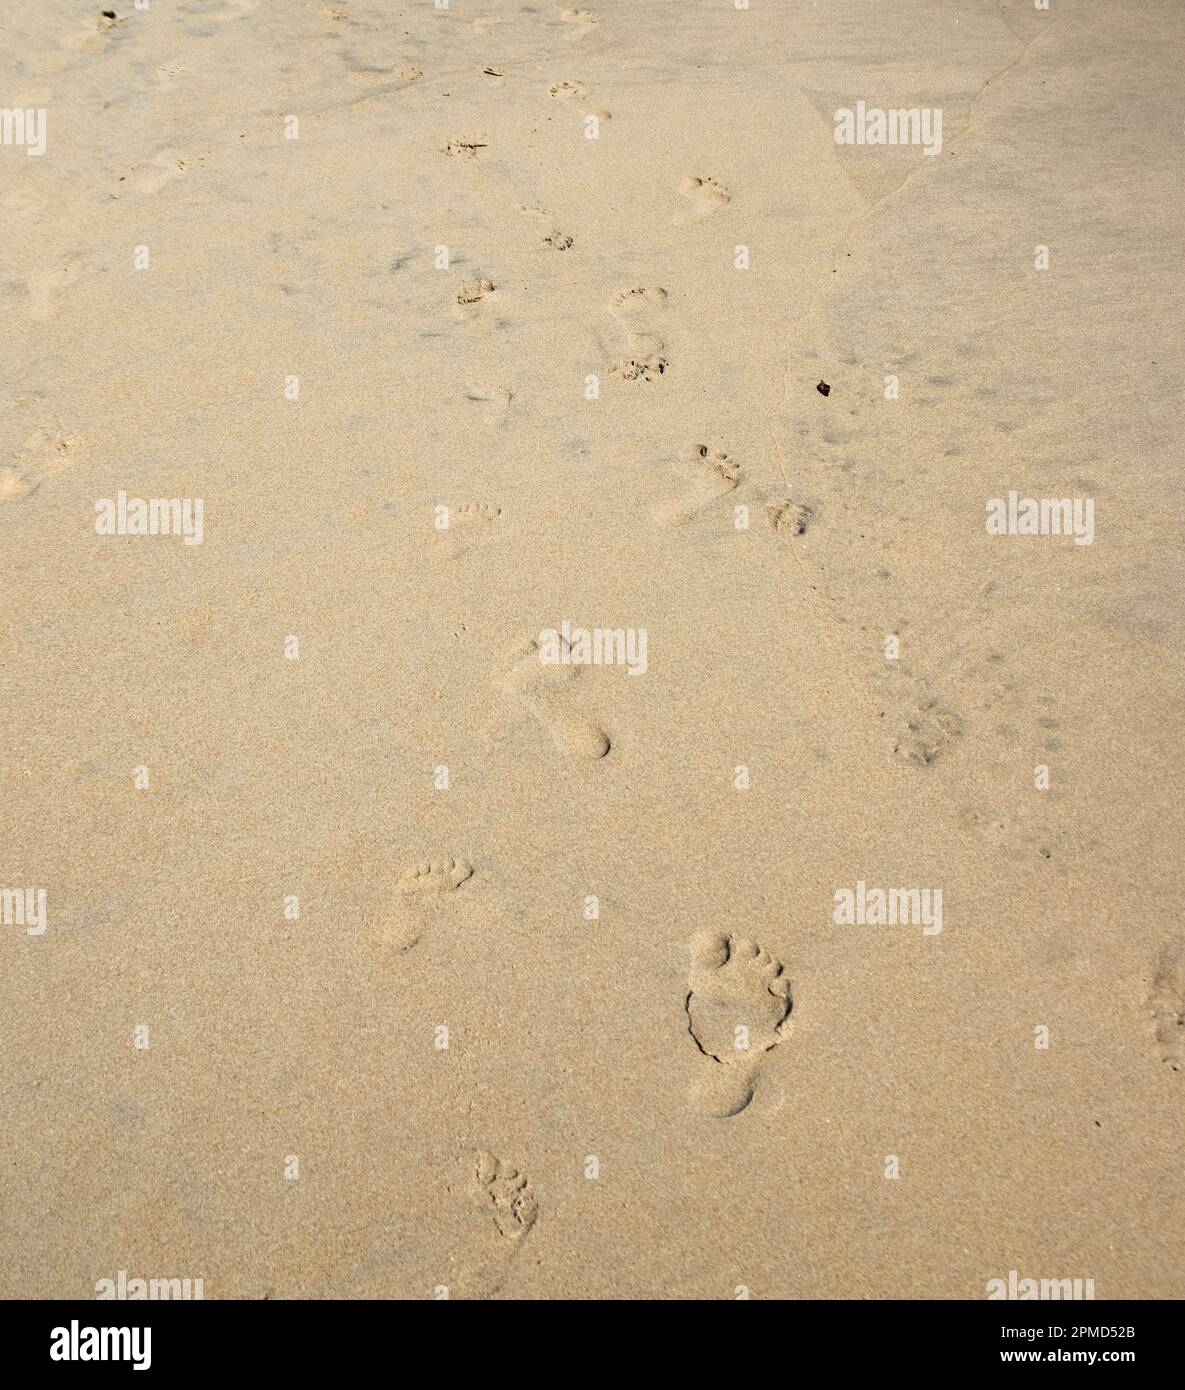 Huellas de un padre y un niño caminando juntos en la playa de arena. Foto de stock